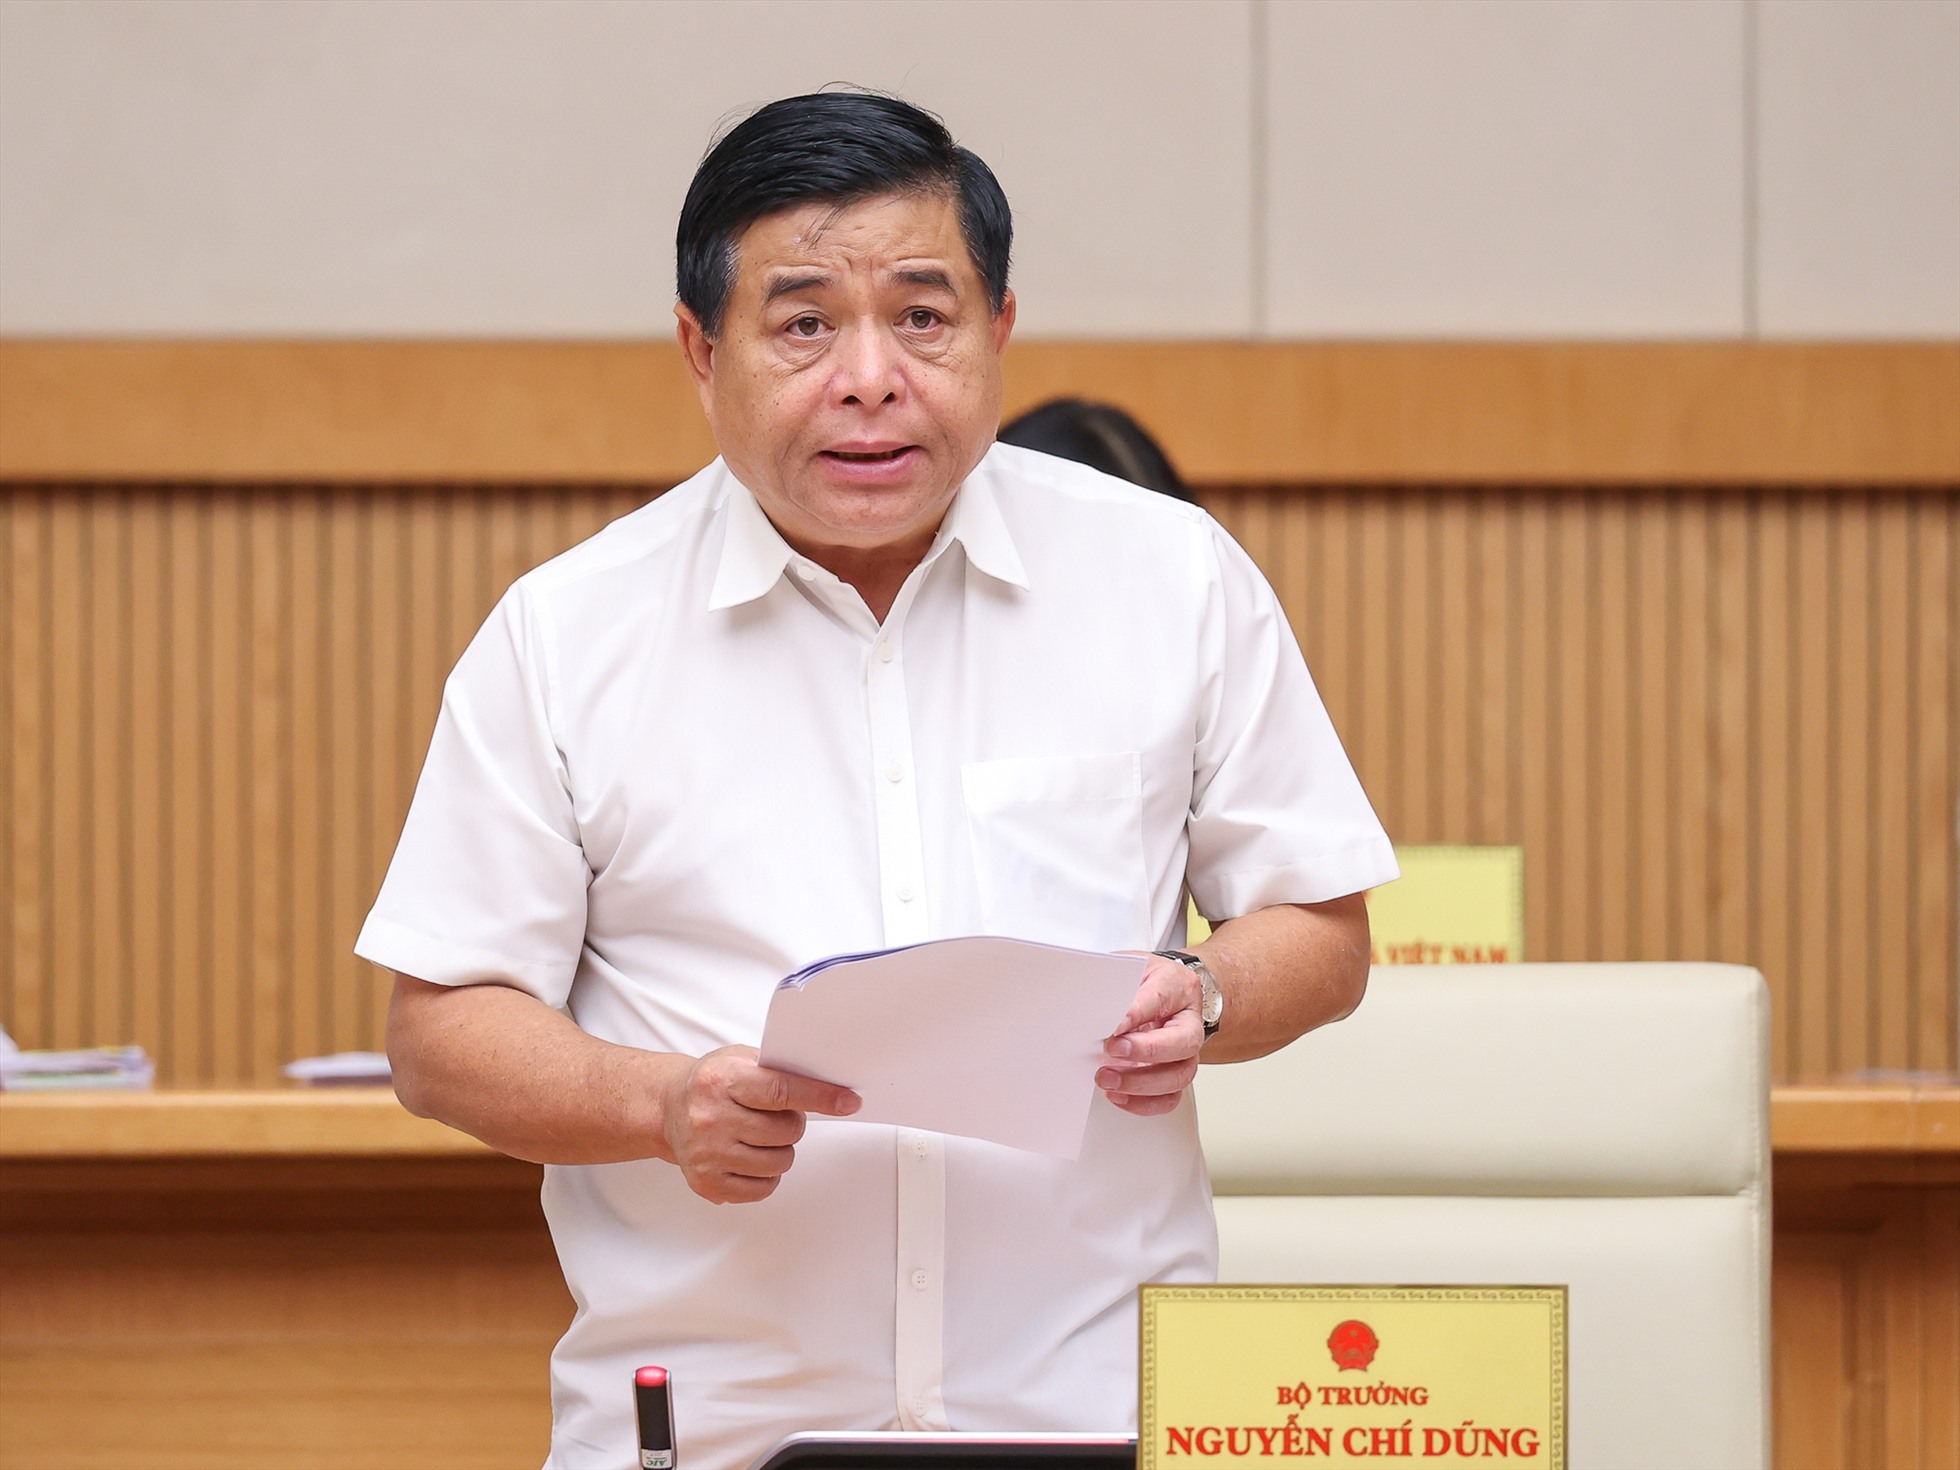 Bộ trưởng Bộ Kế hoạch và Đầu tư Nguyễn Chí Dũng nhận định nền kinh tế tiếp tục xu hướng phục hồi tích cực, lạm phát được kiểm soát